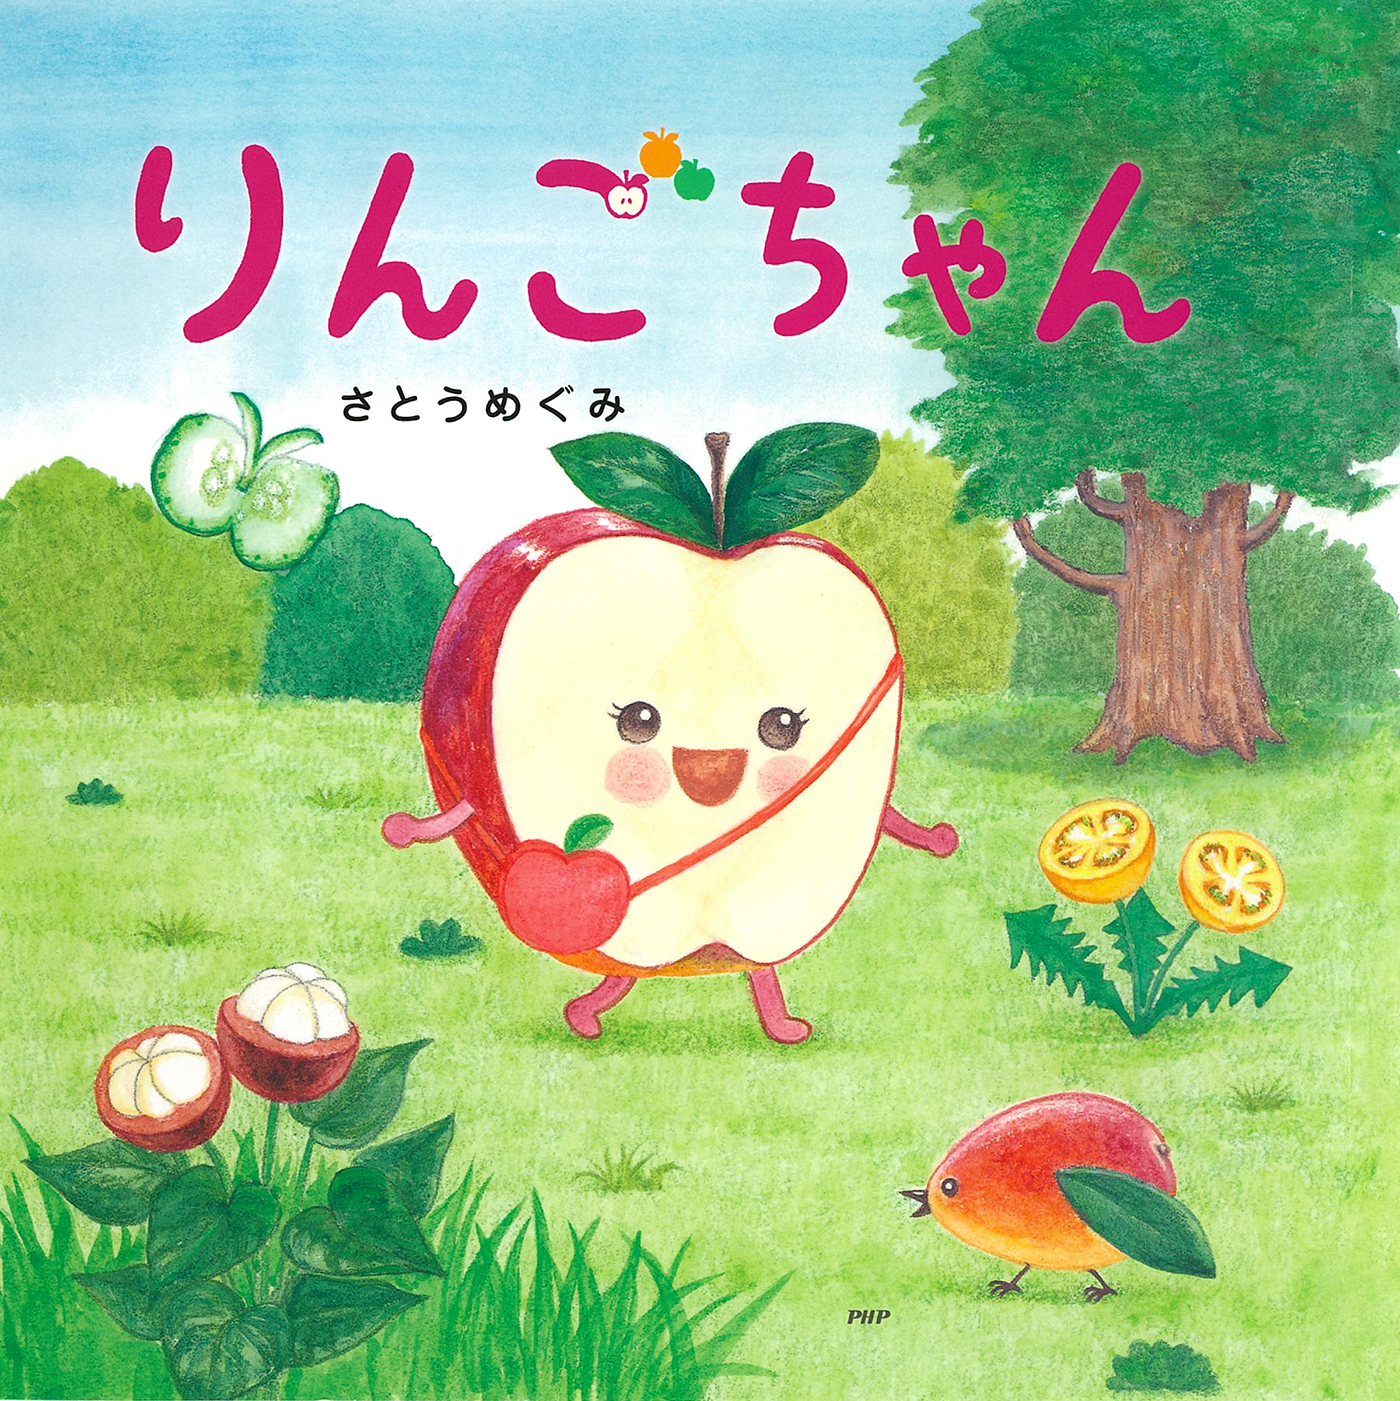 リンゴちゃん様 専用 www.bskampala.com